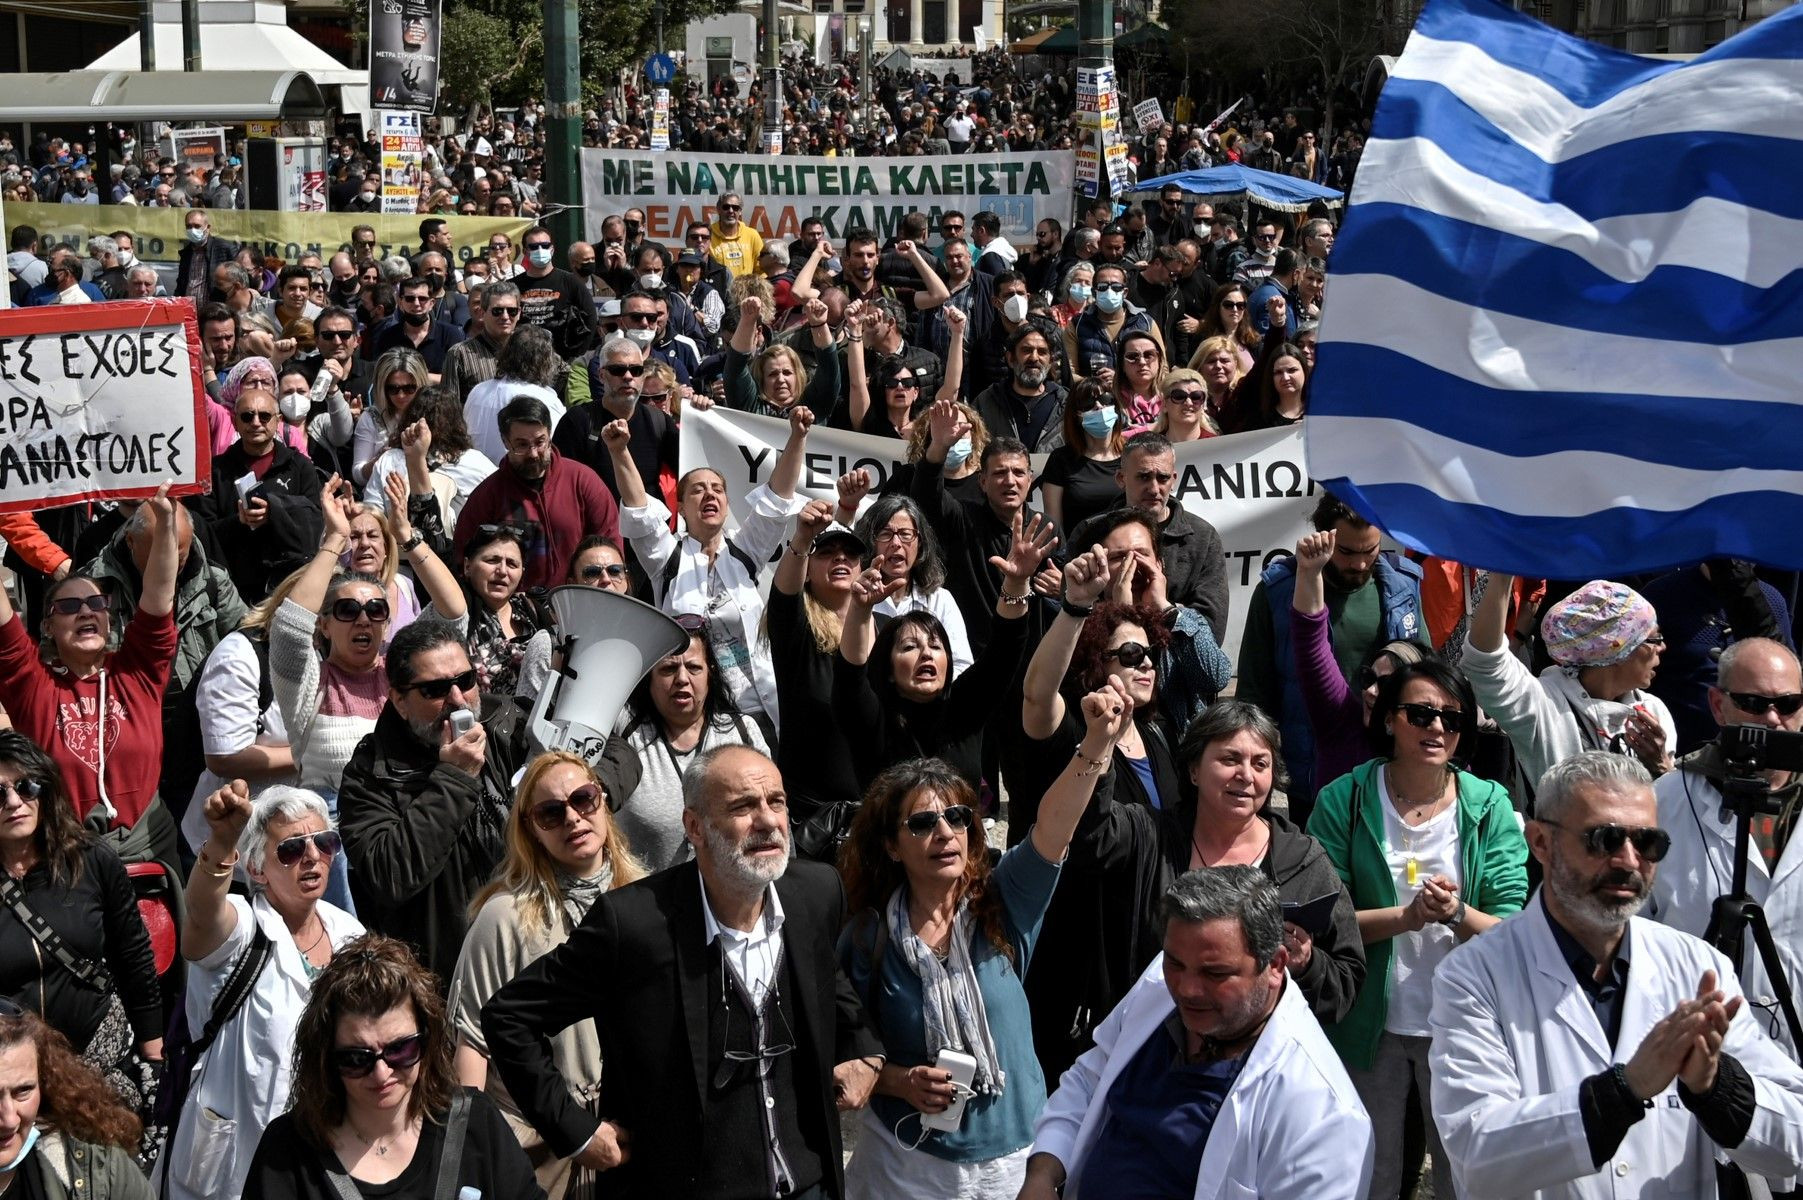 10 آلاف شخص يتظاهرون في اليونان احتجاجاً على ارتفاع الأسعار